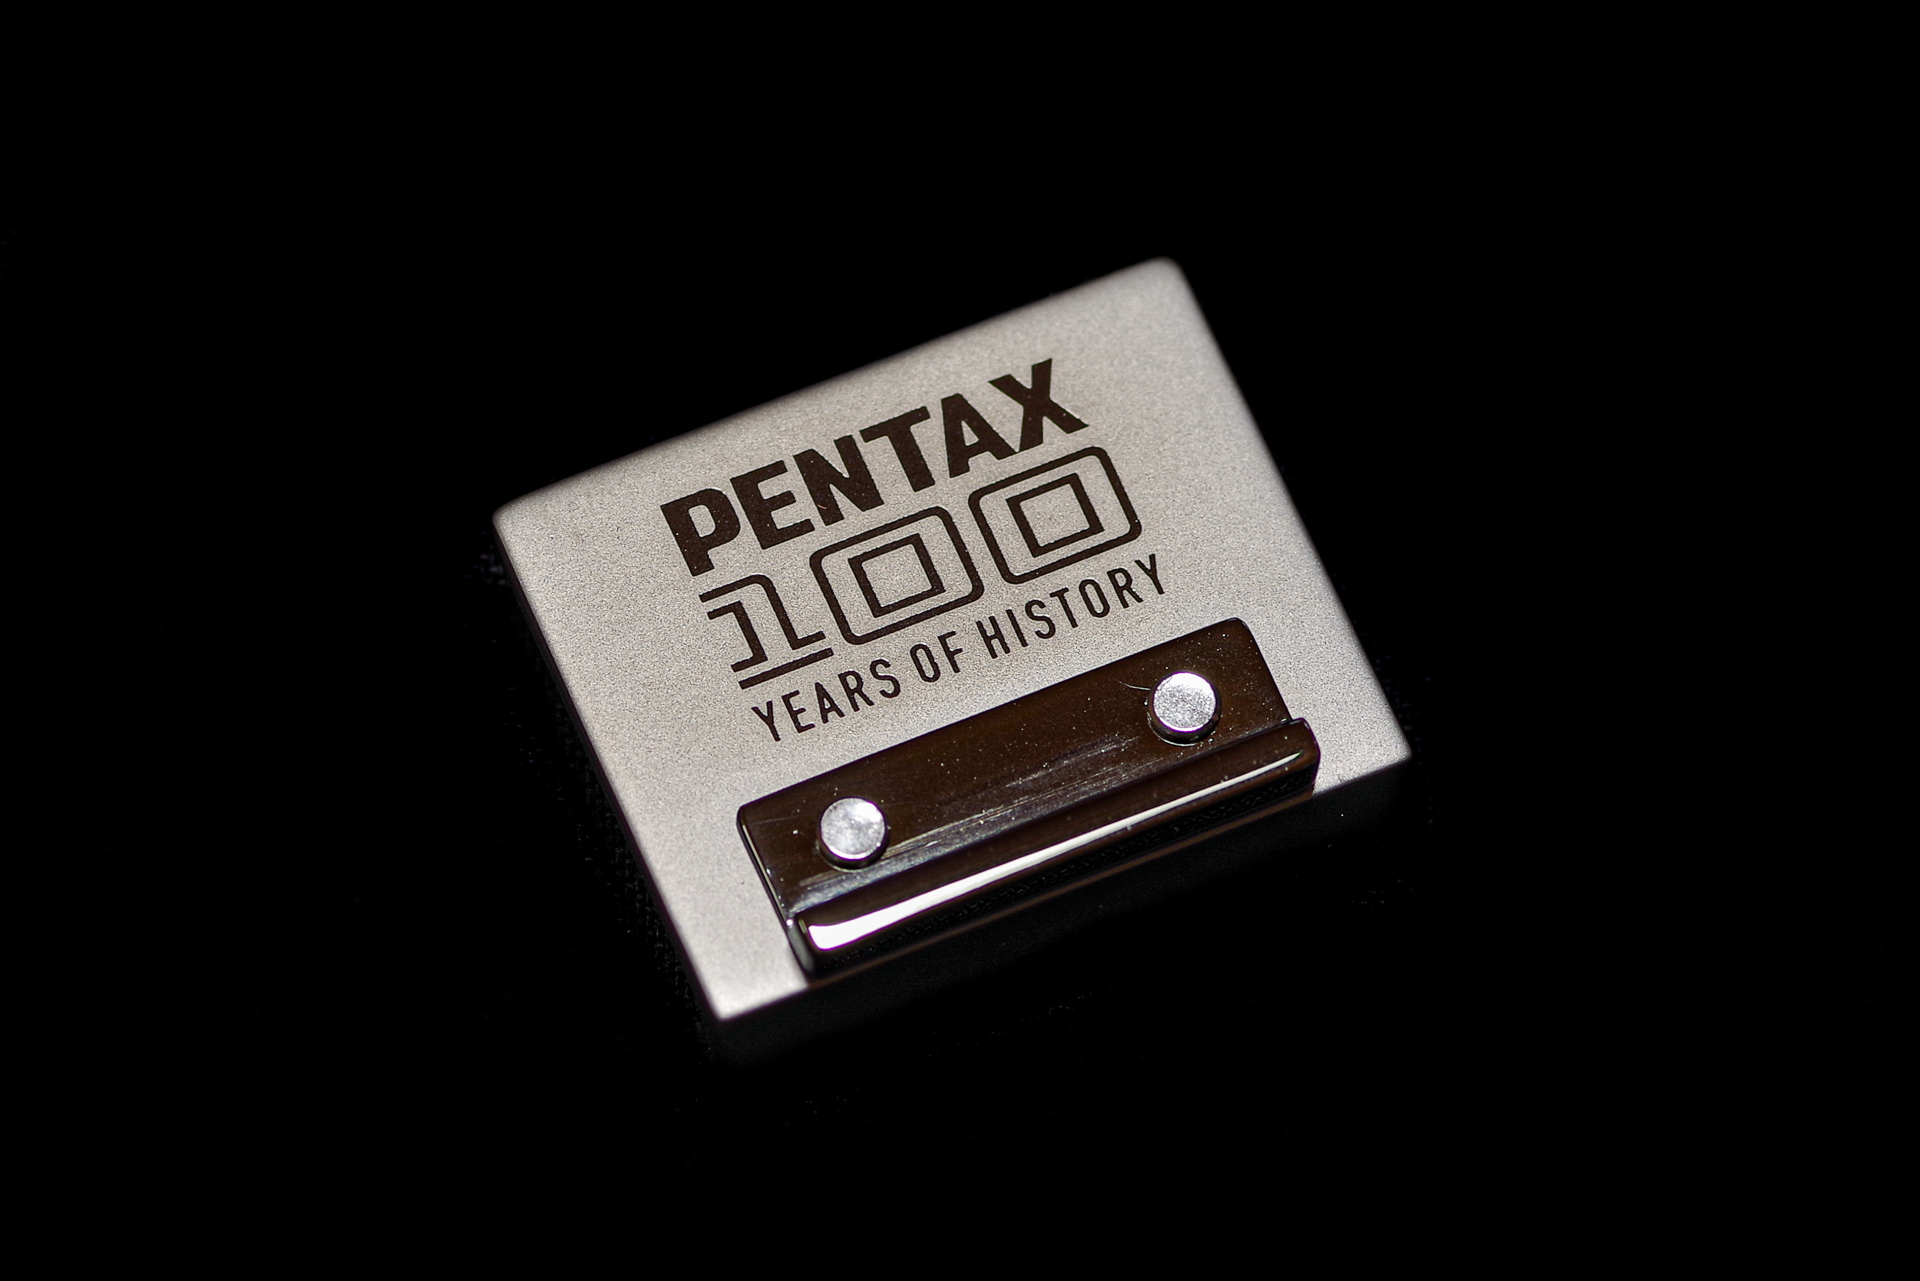 PENTAX100周年記念の限定ホットシューカバー O-HC171 を手に入れた 